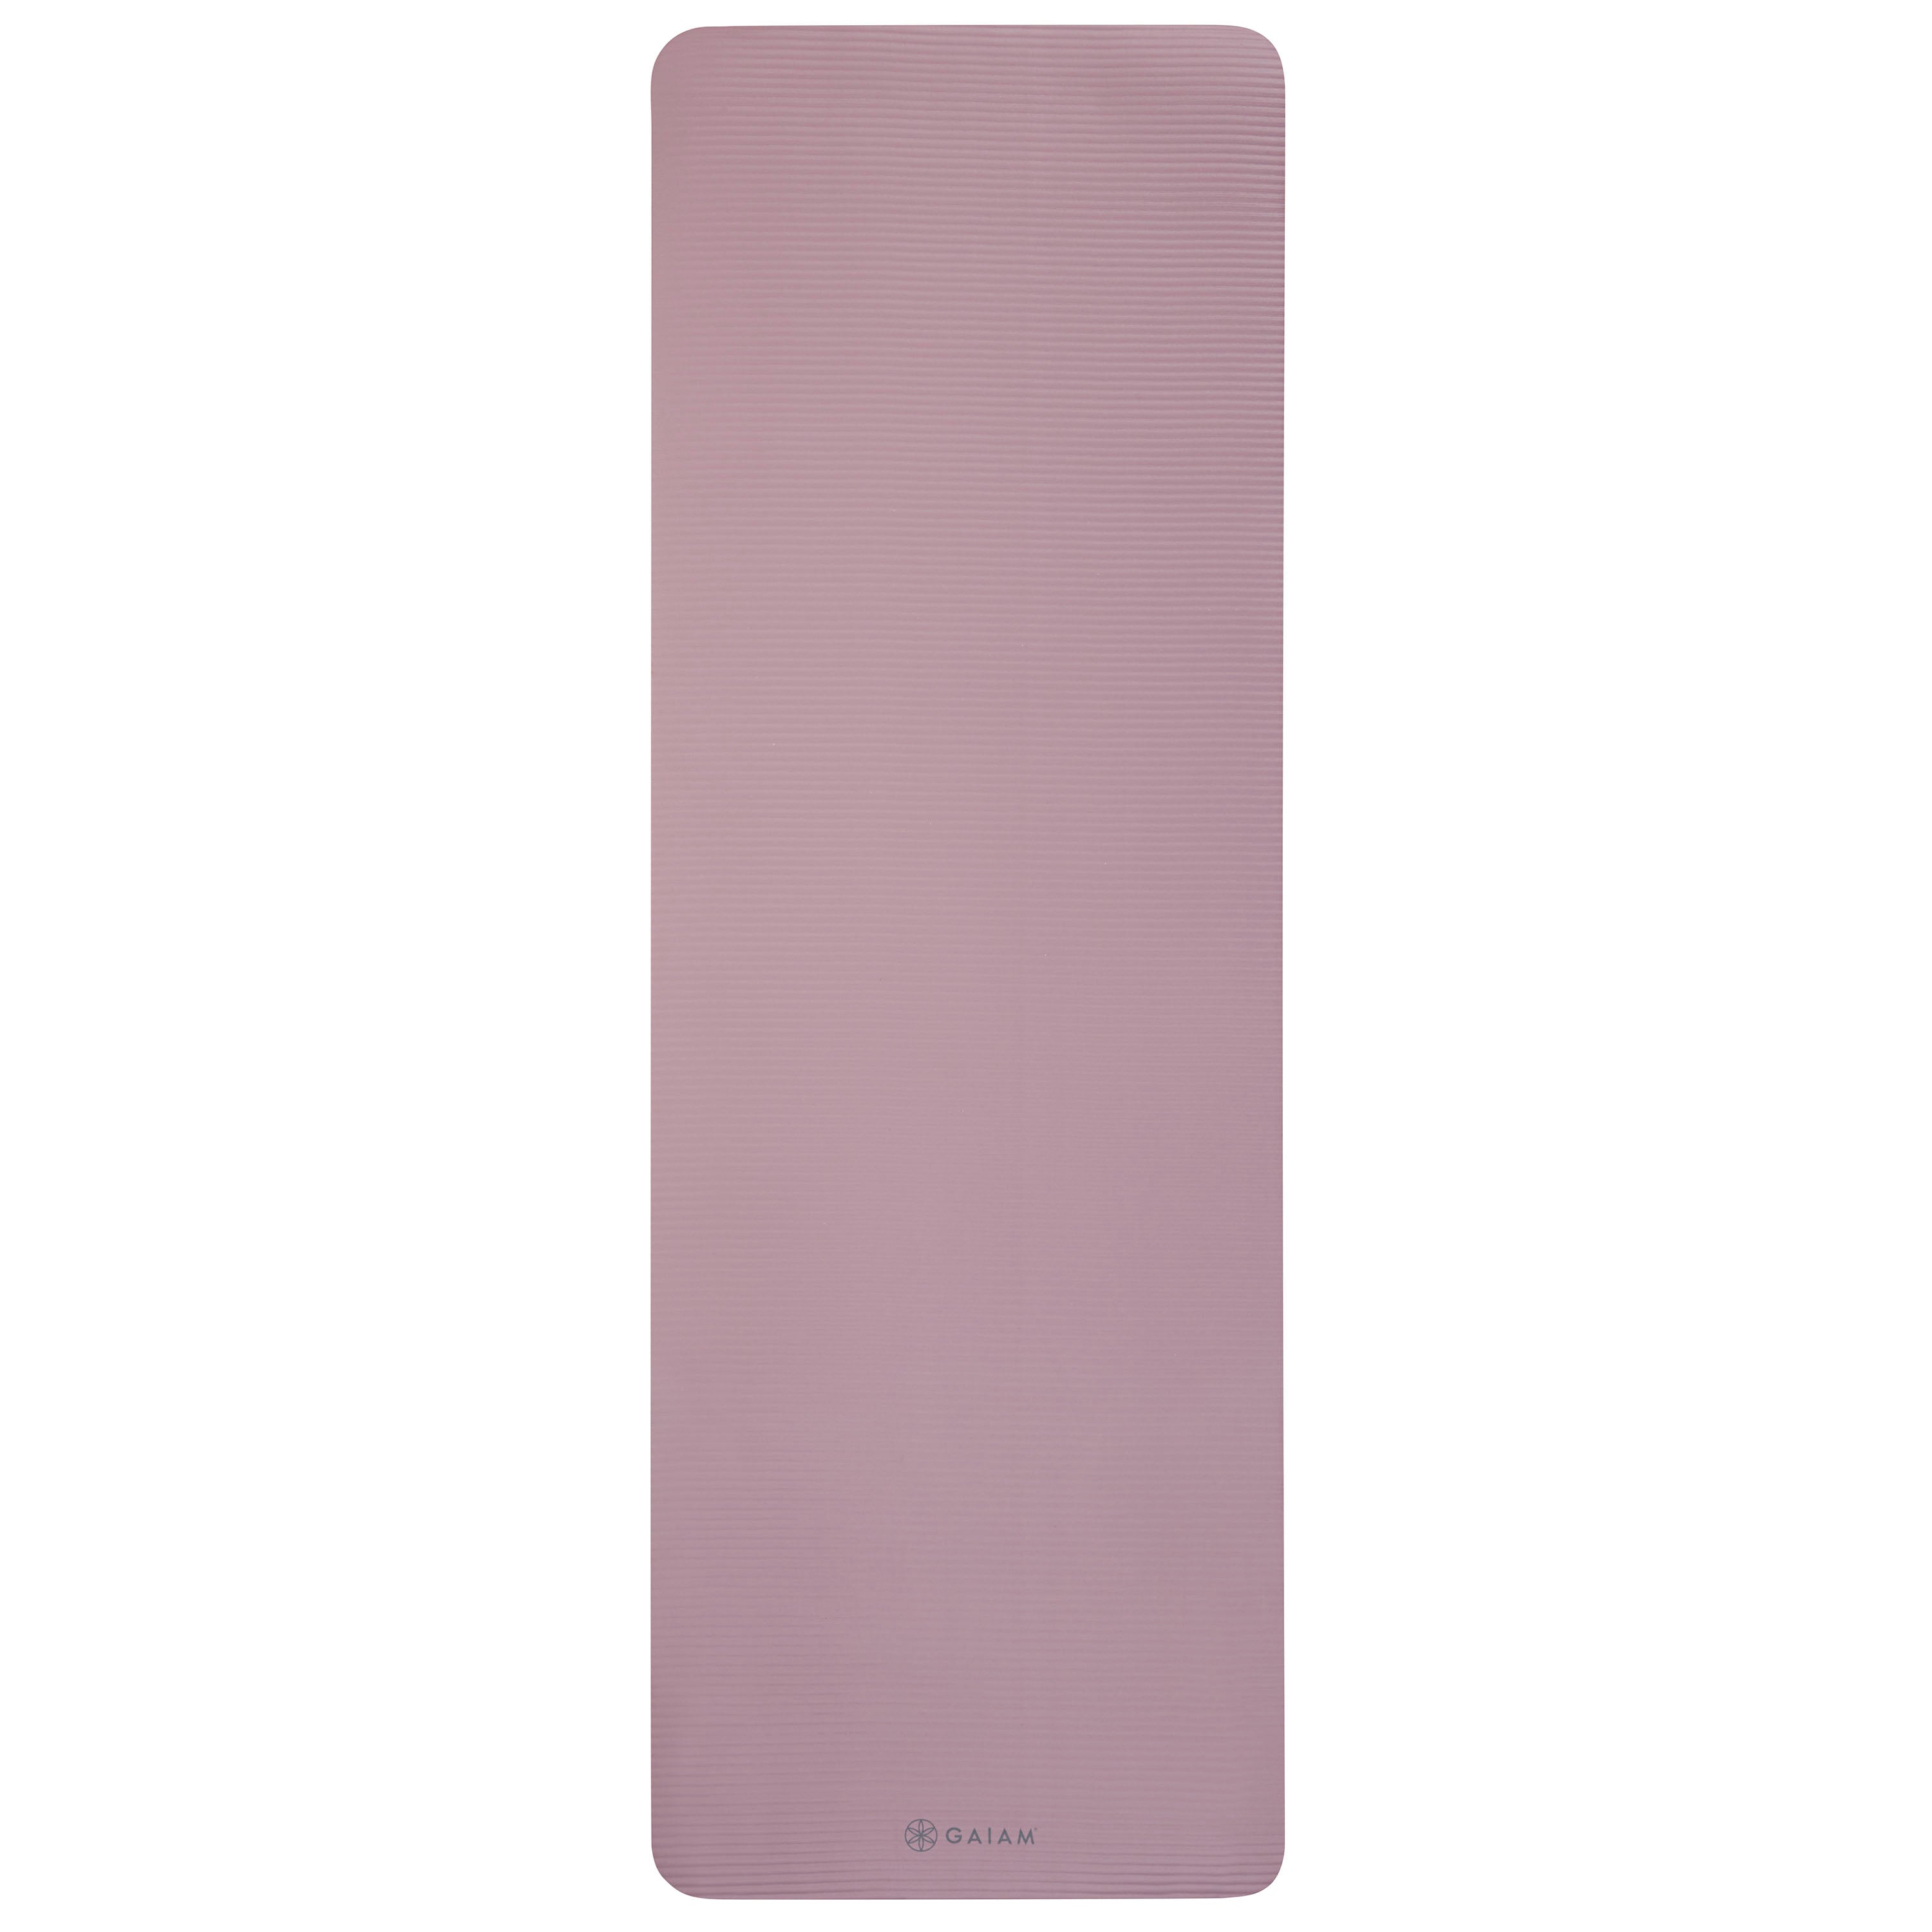 Gaiam Fitness Mat (10mm) Purple